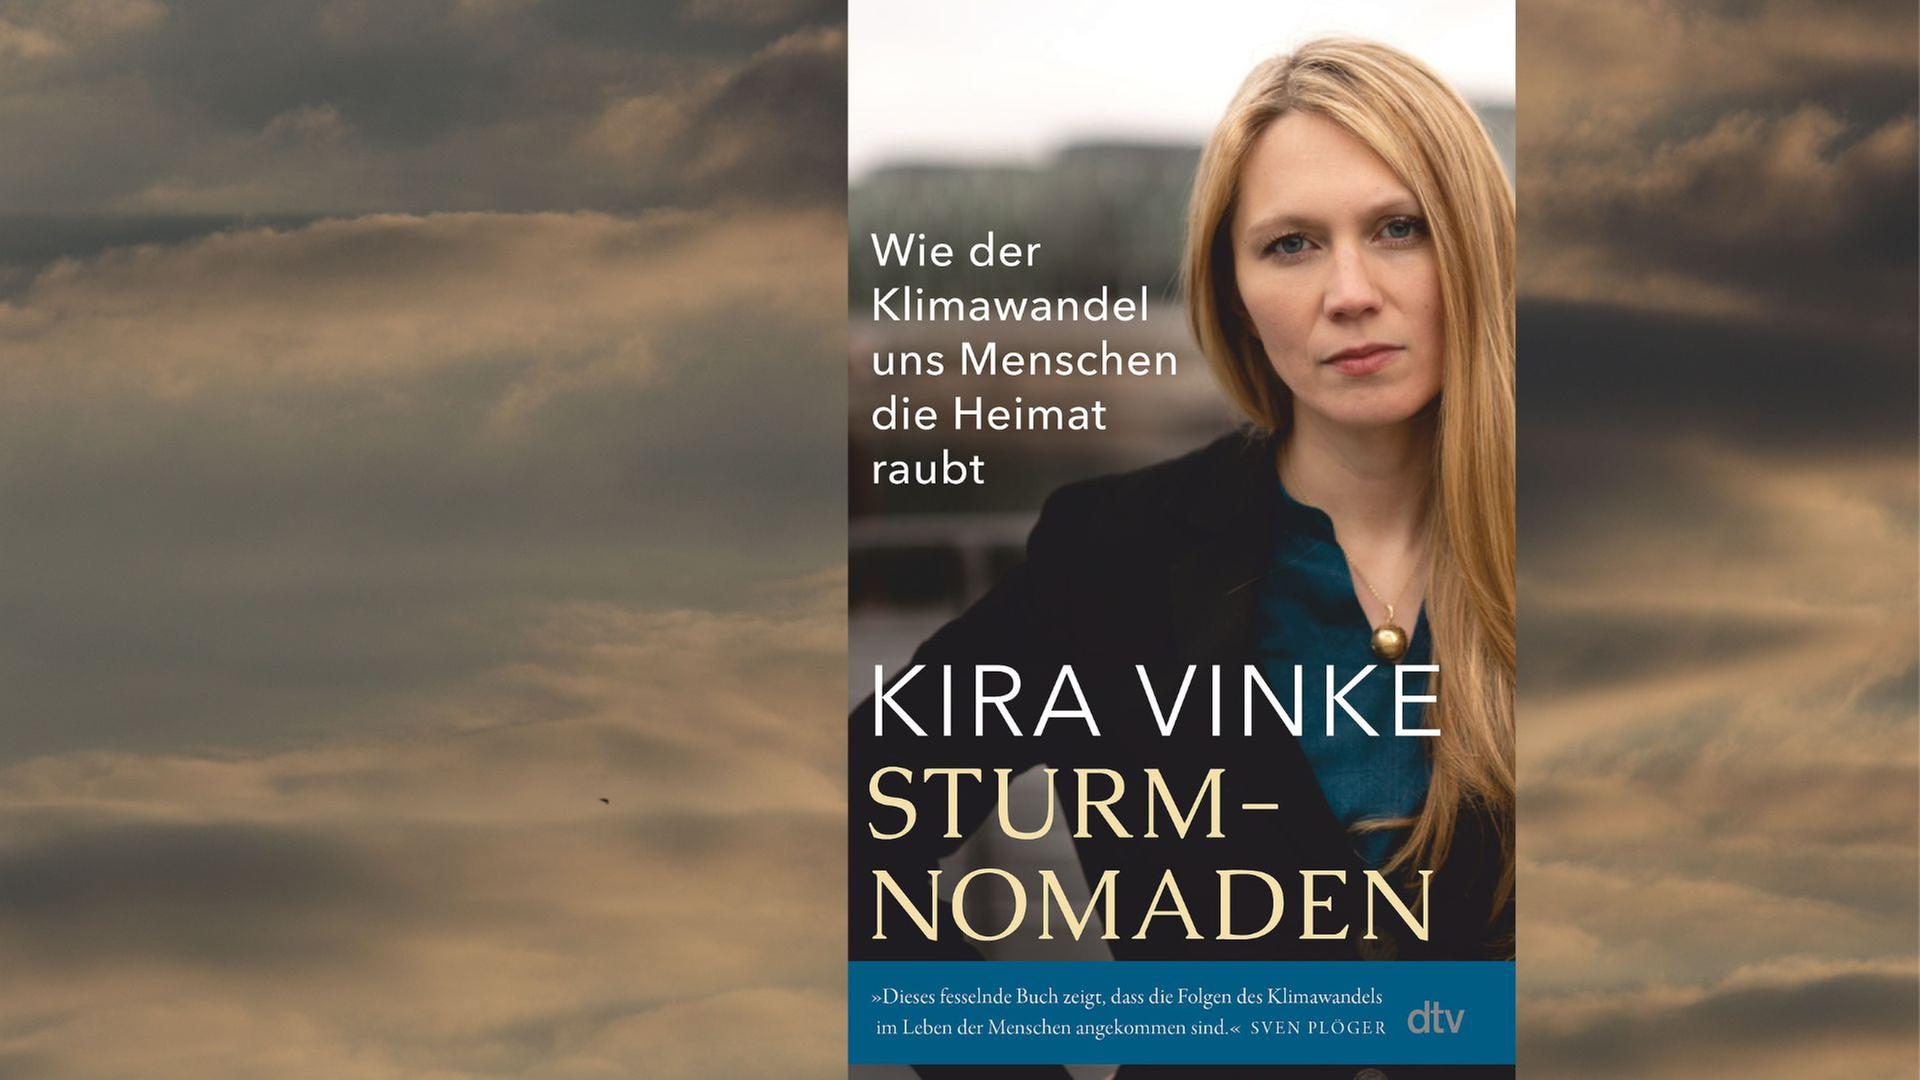 Kira Vinke und ihr Sachbuch "Sturmnomaden. Wie der Klimawandel uns Menschen die Heimat raubt"